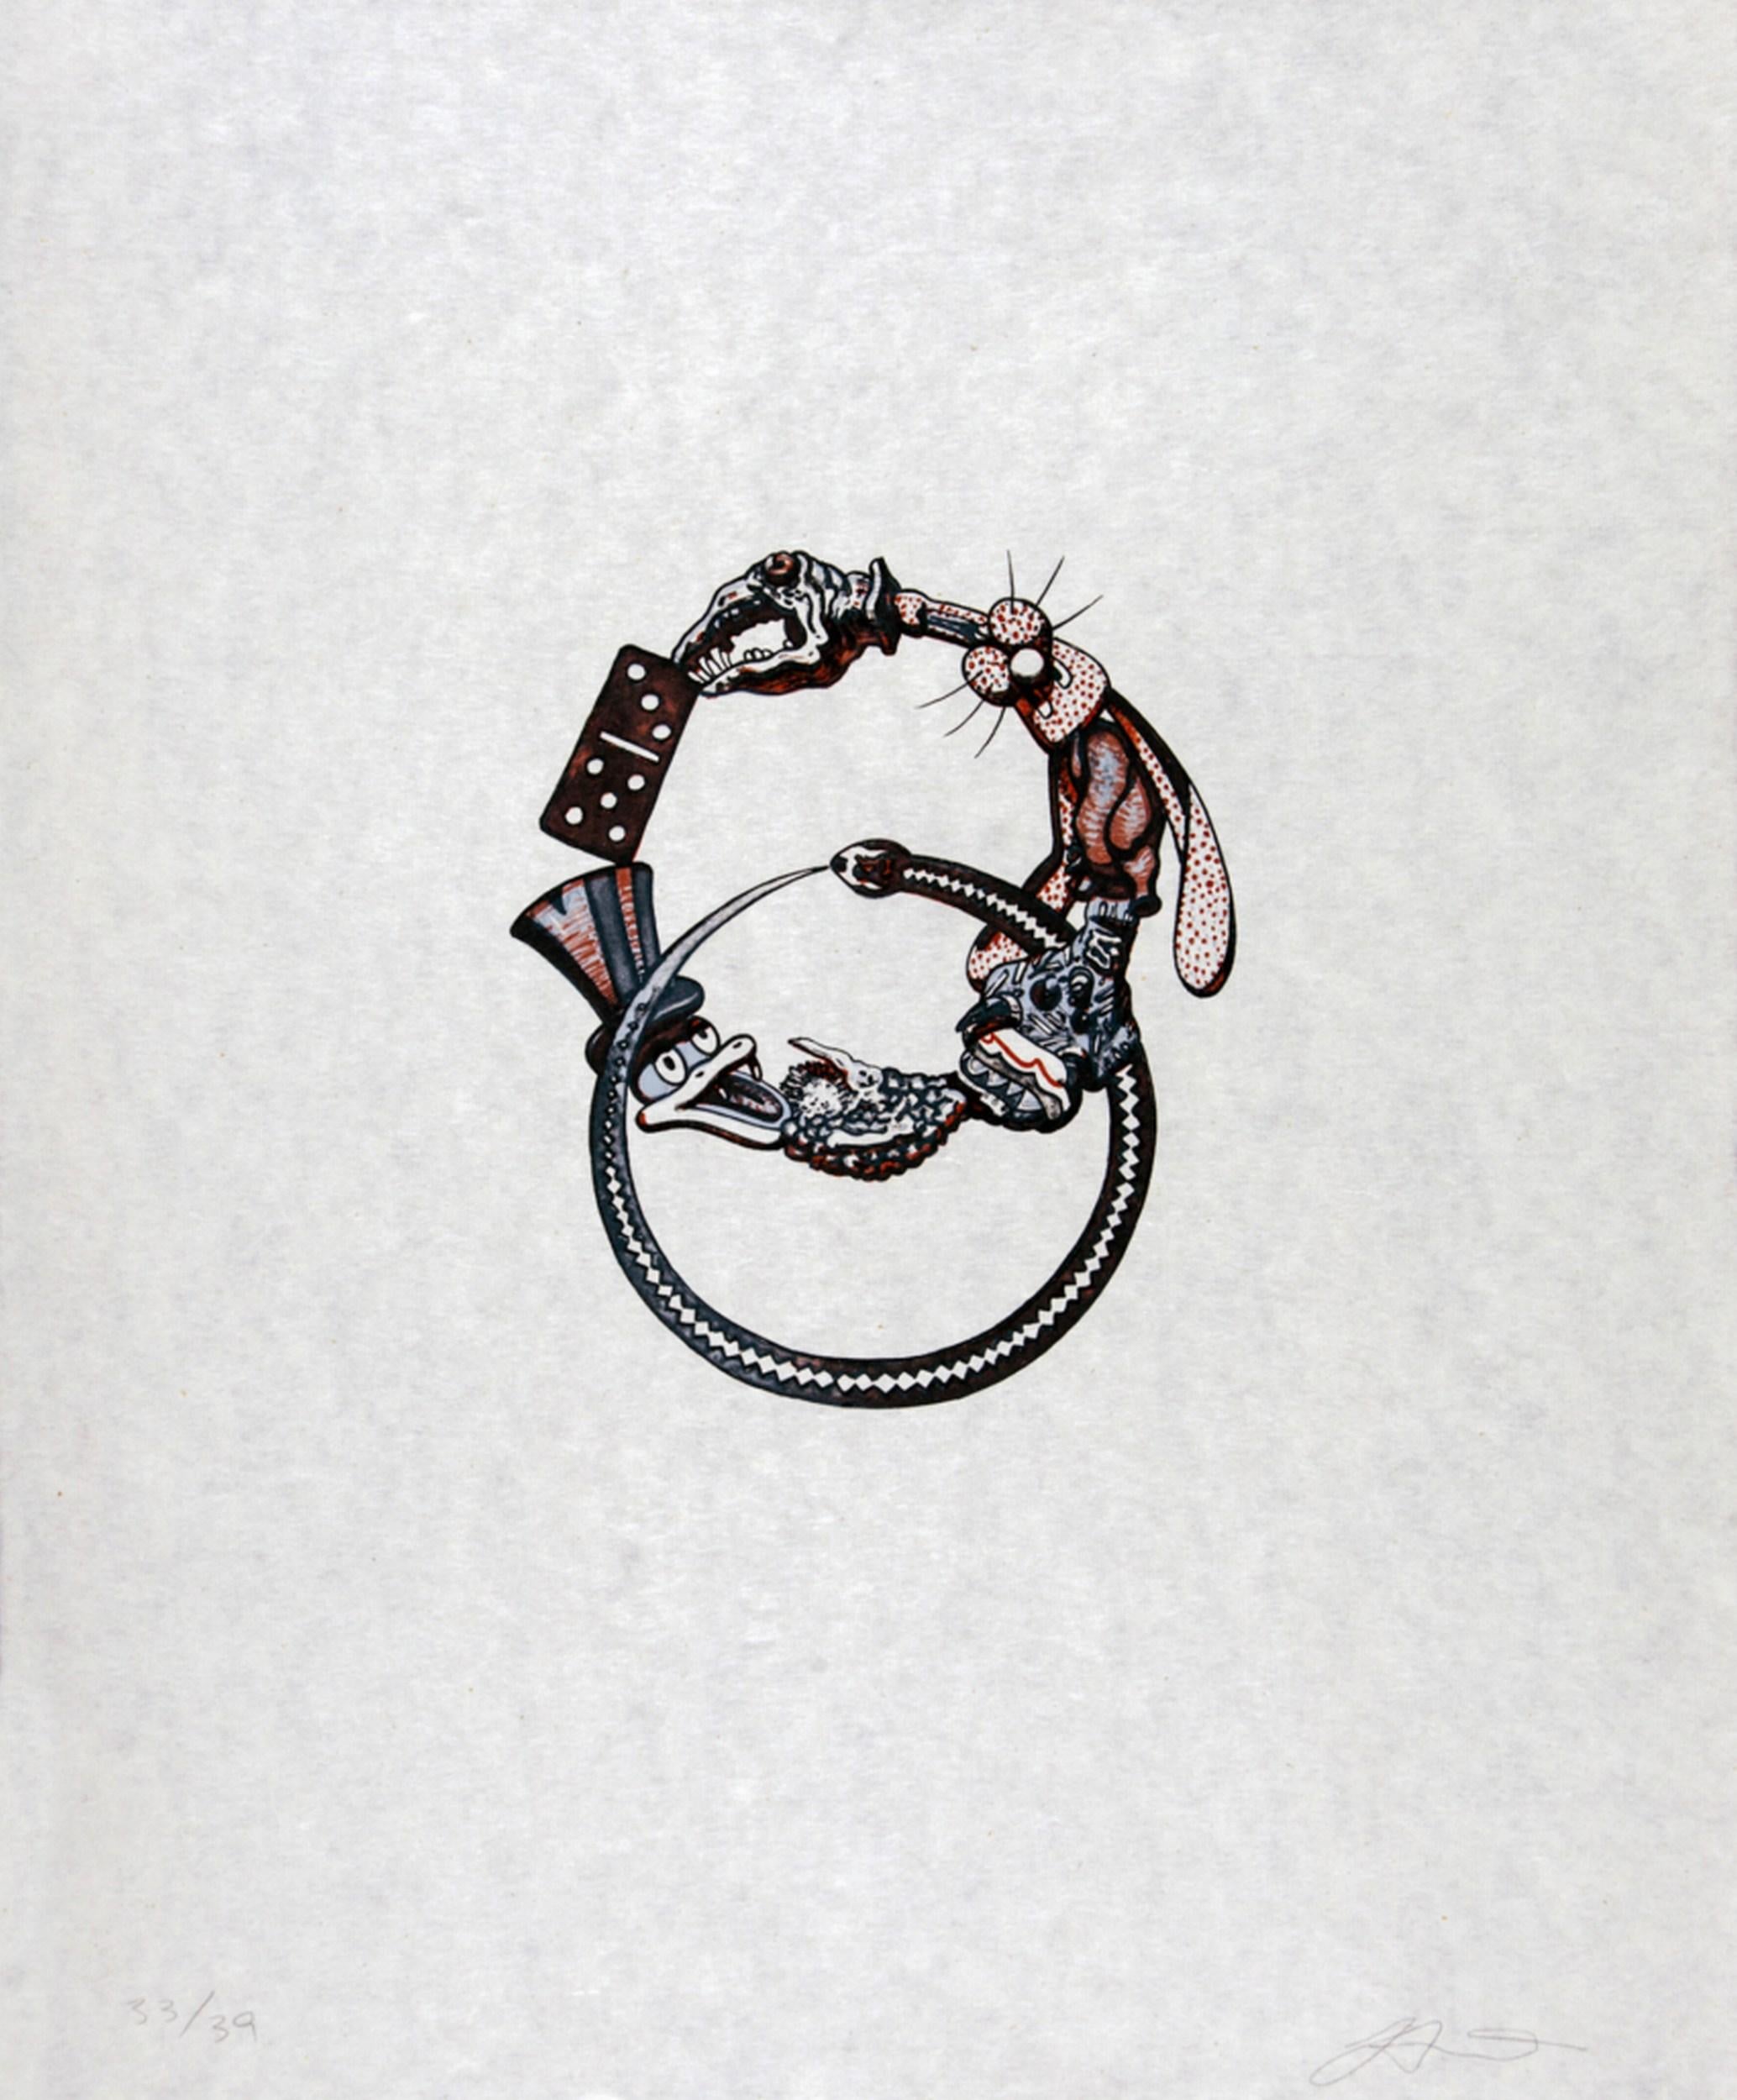 Rings of Life - Print by Benito Huerta